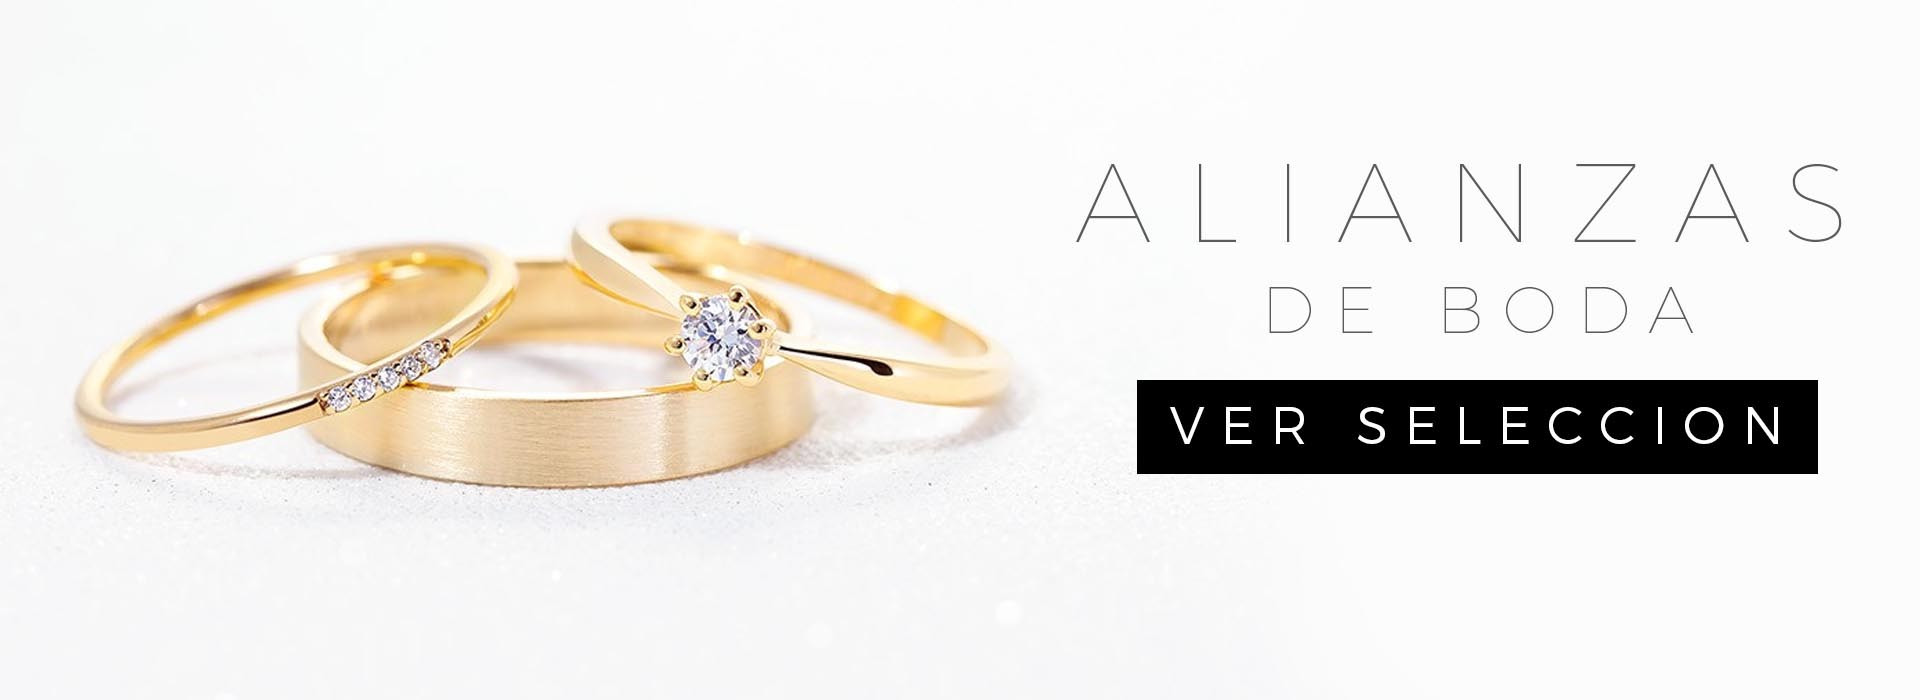 Alianzas de boda personalizadas. Descubre tus anillos de boda artesanales. 